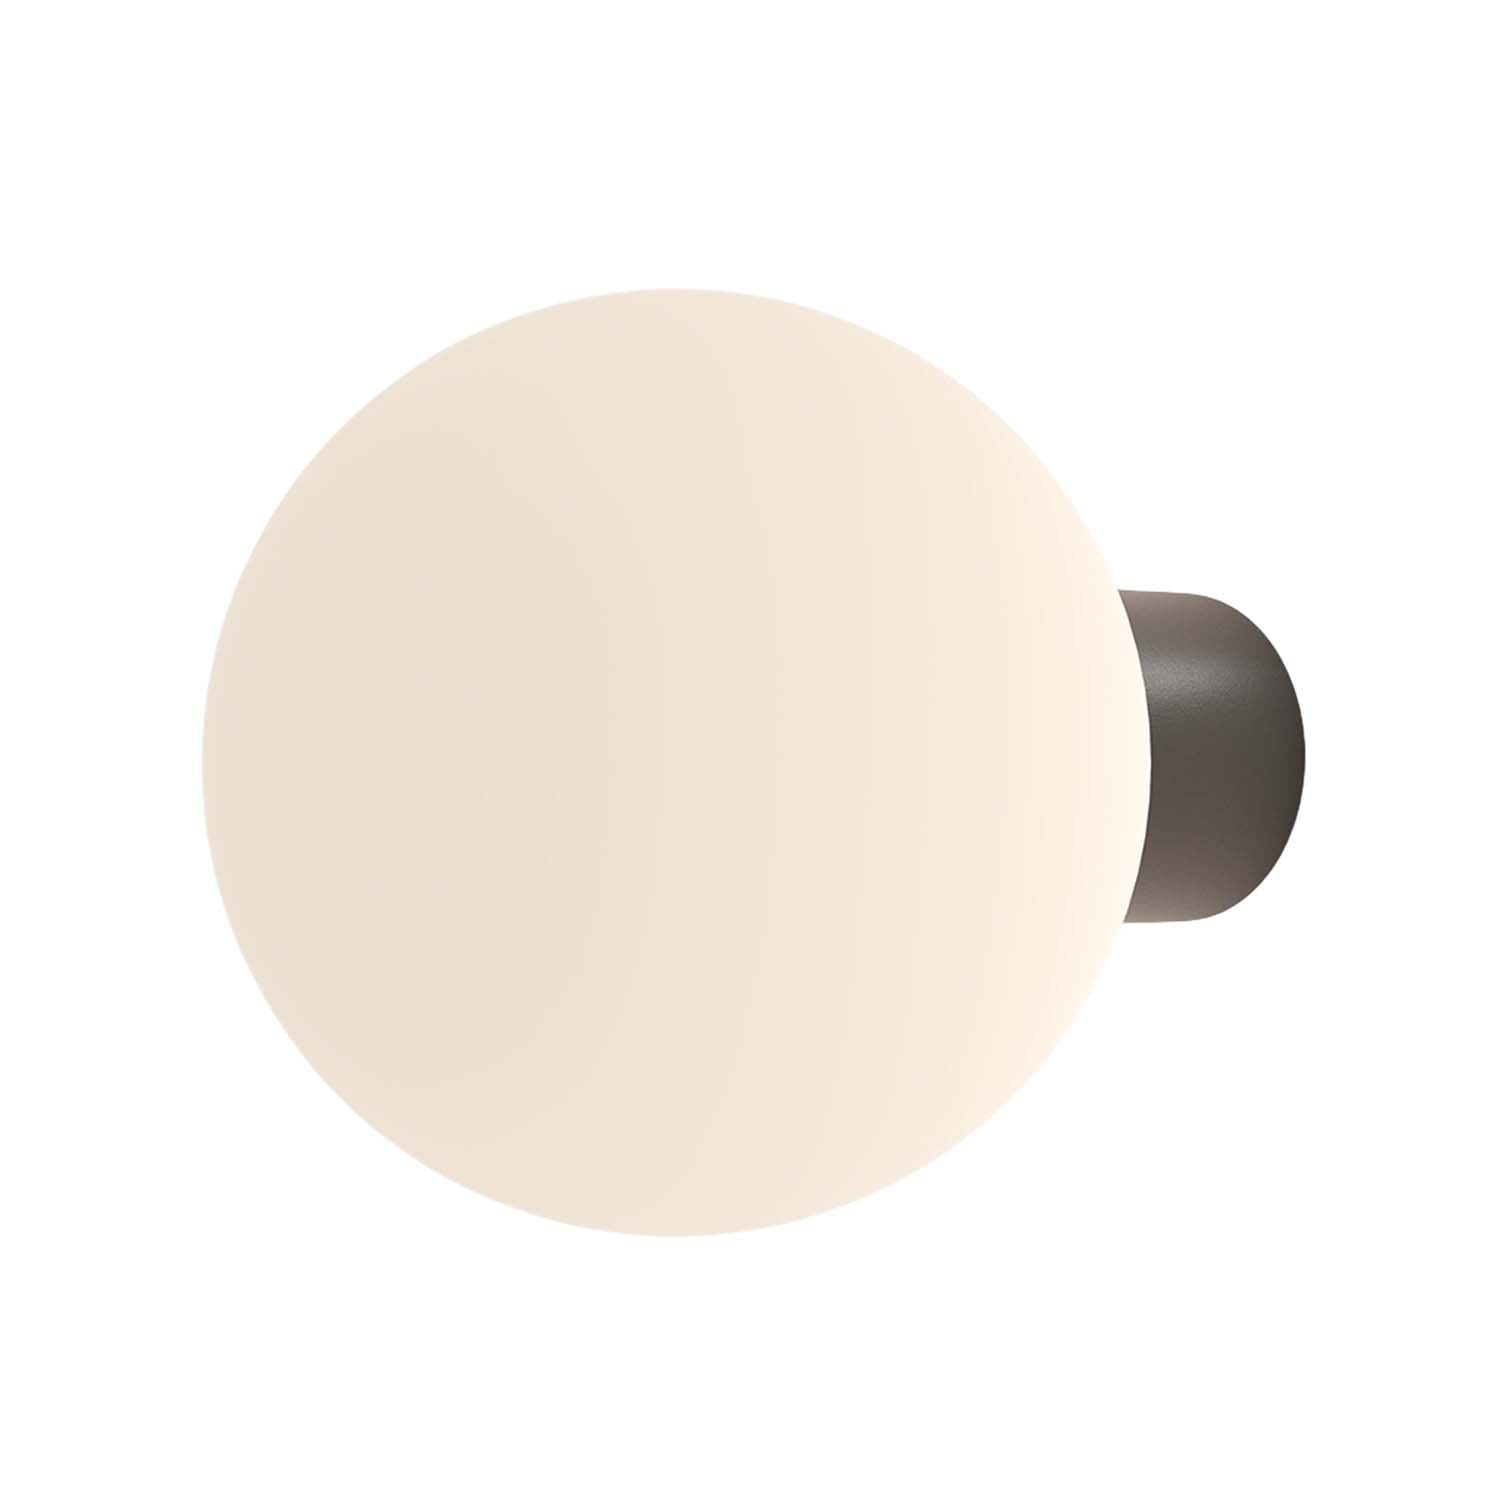 BOLD - Waterproof and stylish white globe exterior wall light